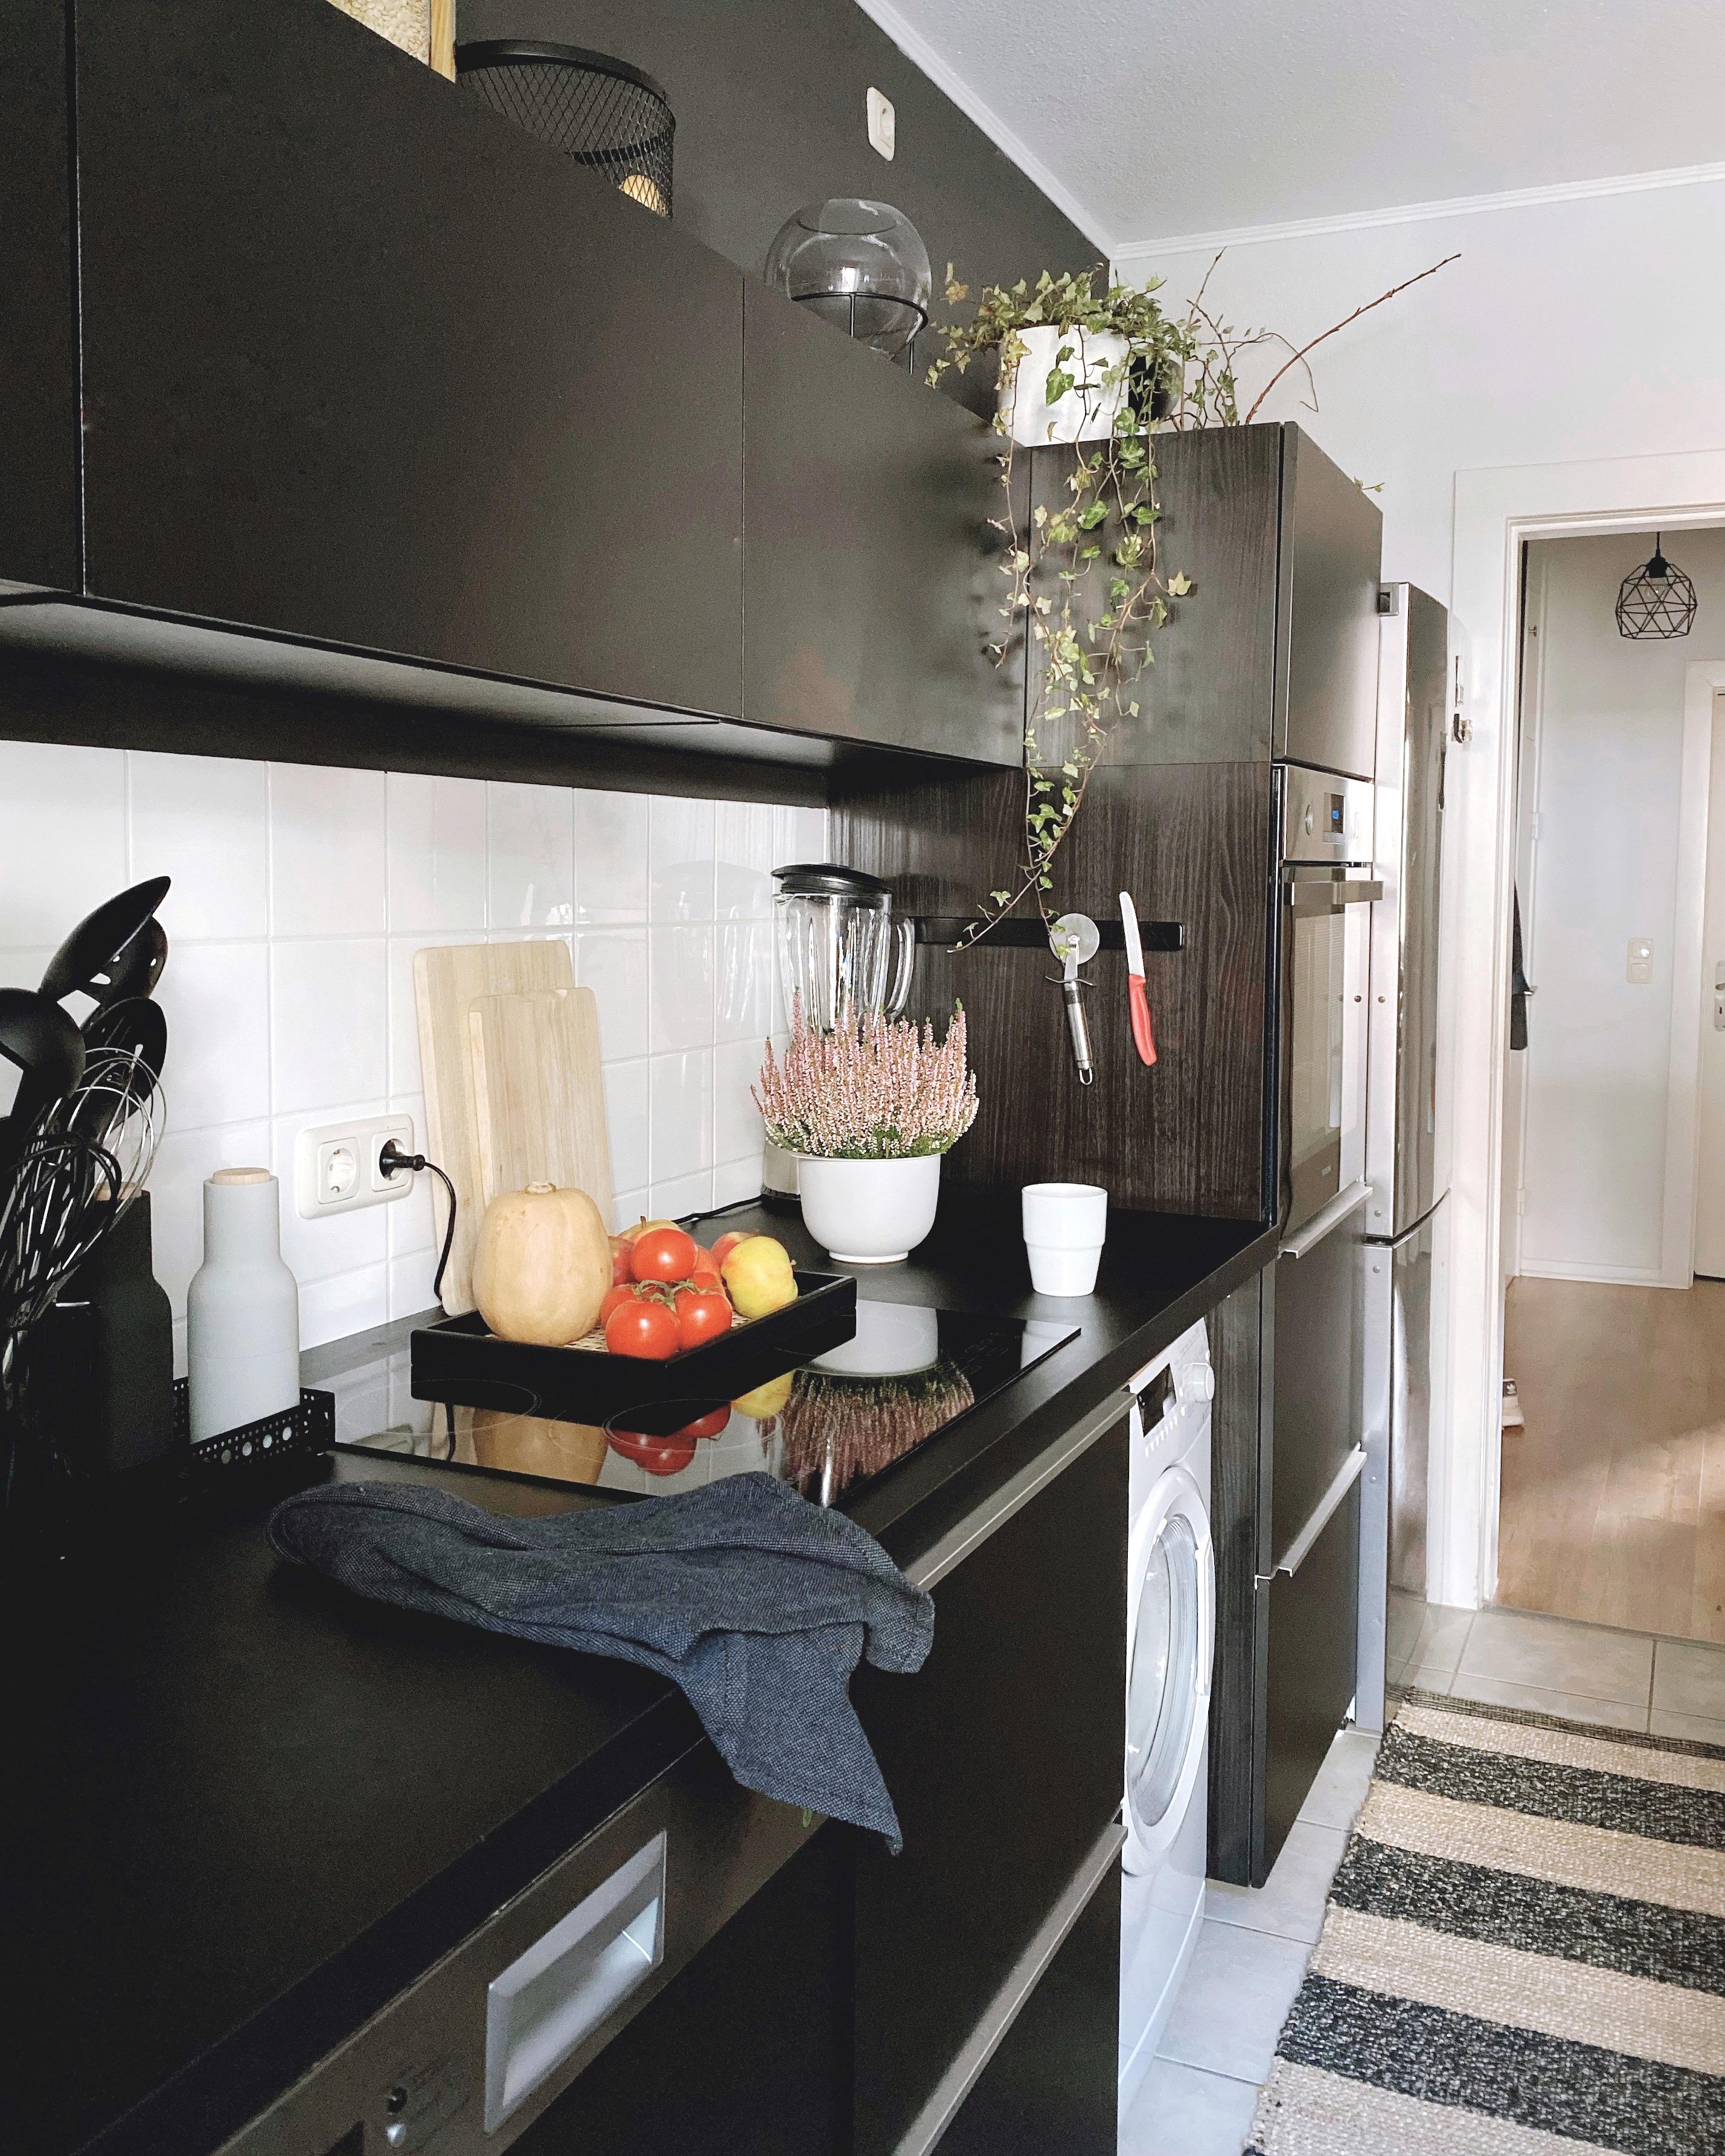 #kitchen 🖤 
#interior #scandinaviandesign #nordichome #küche